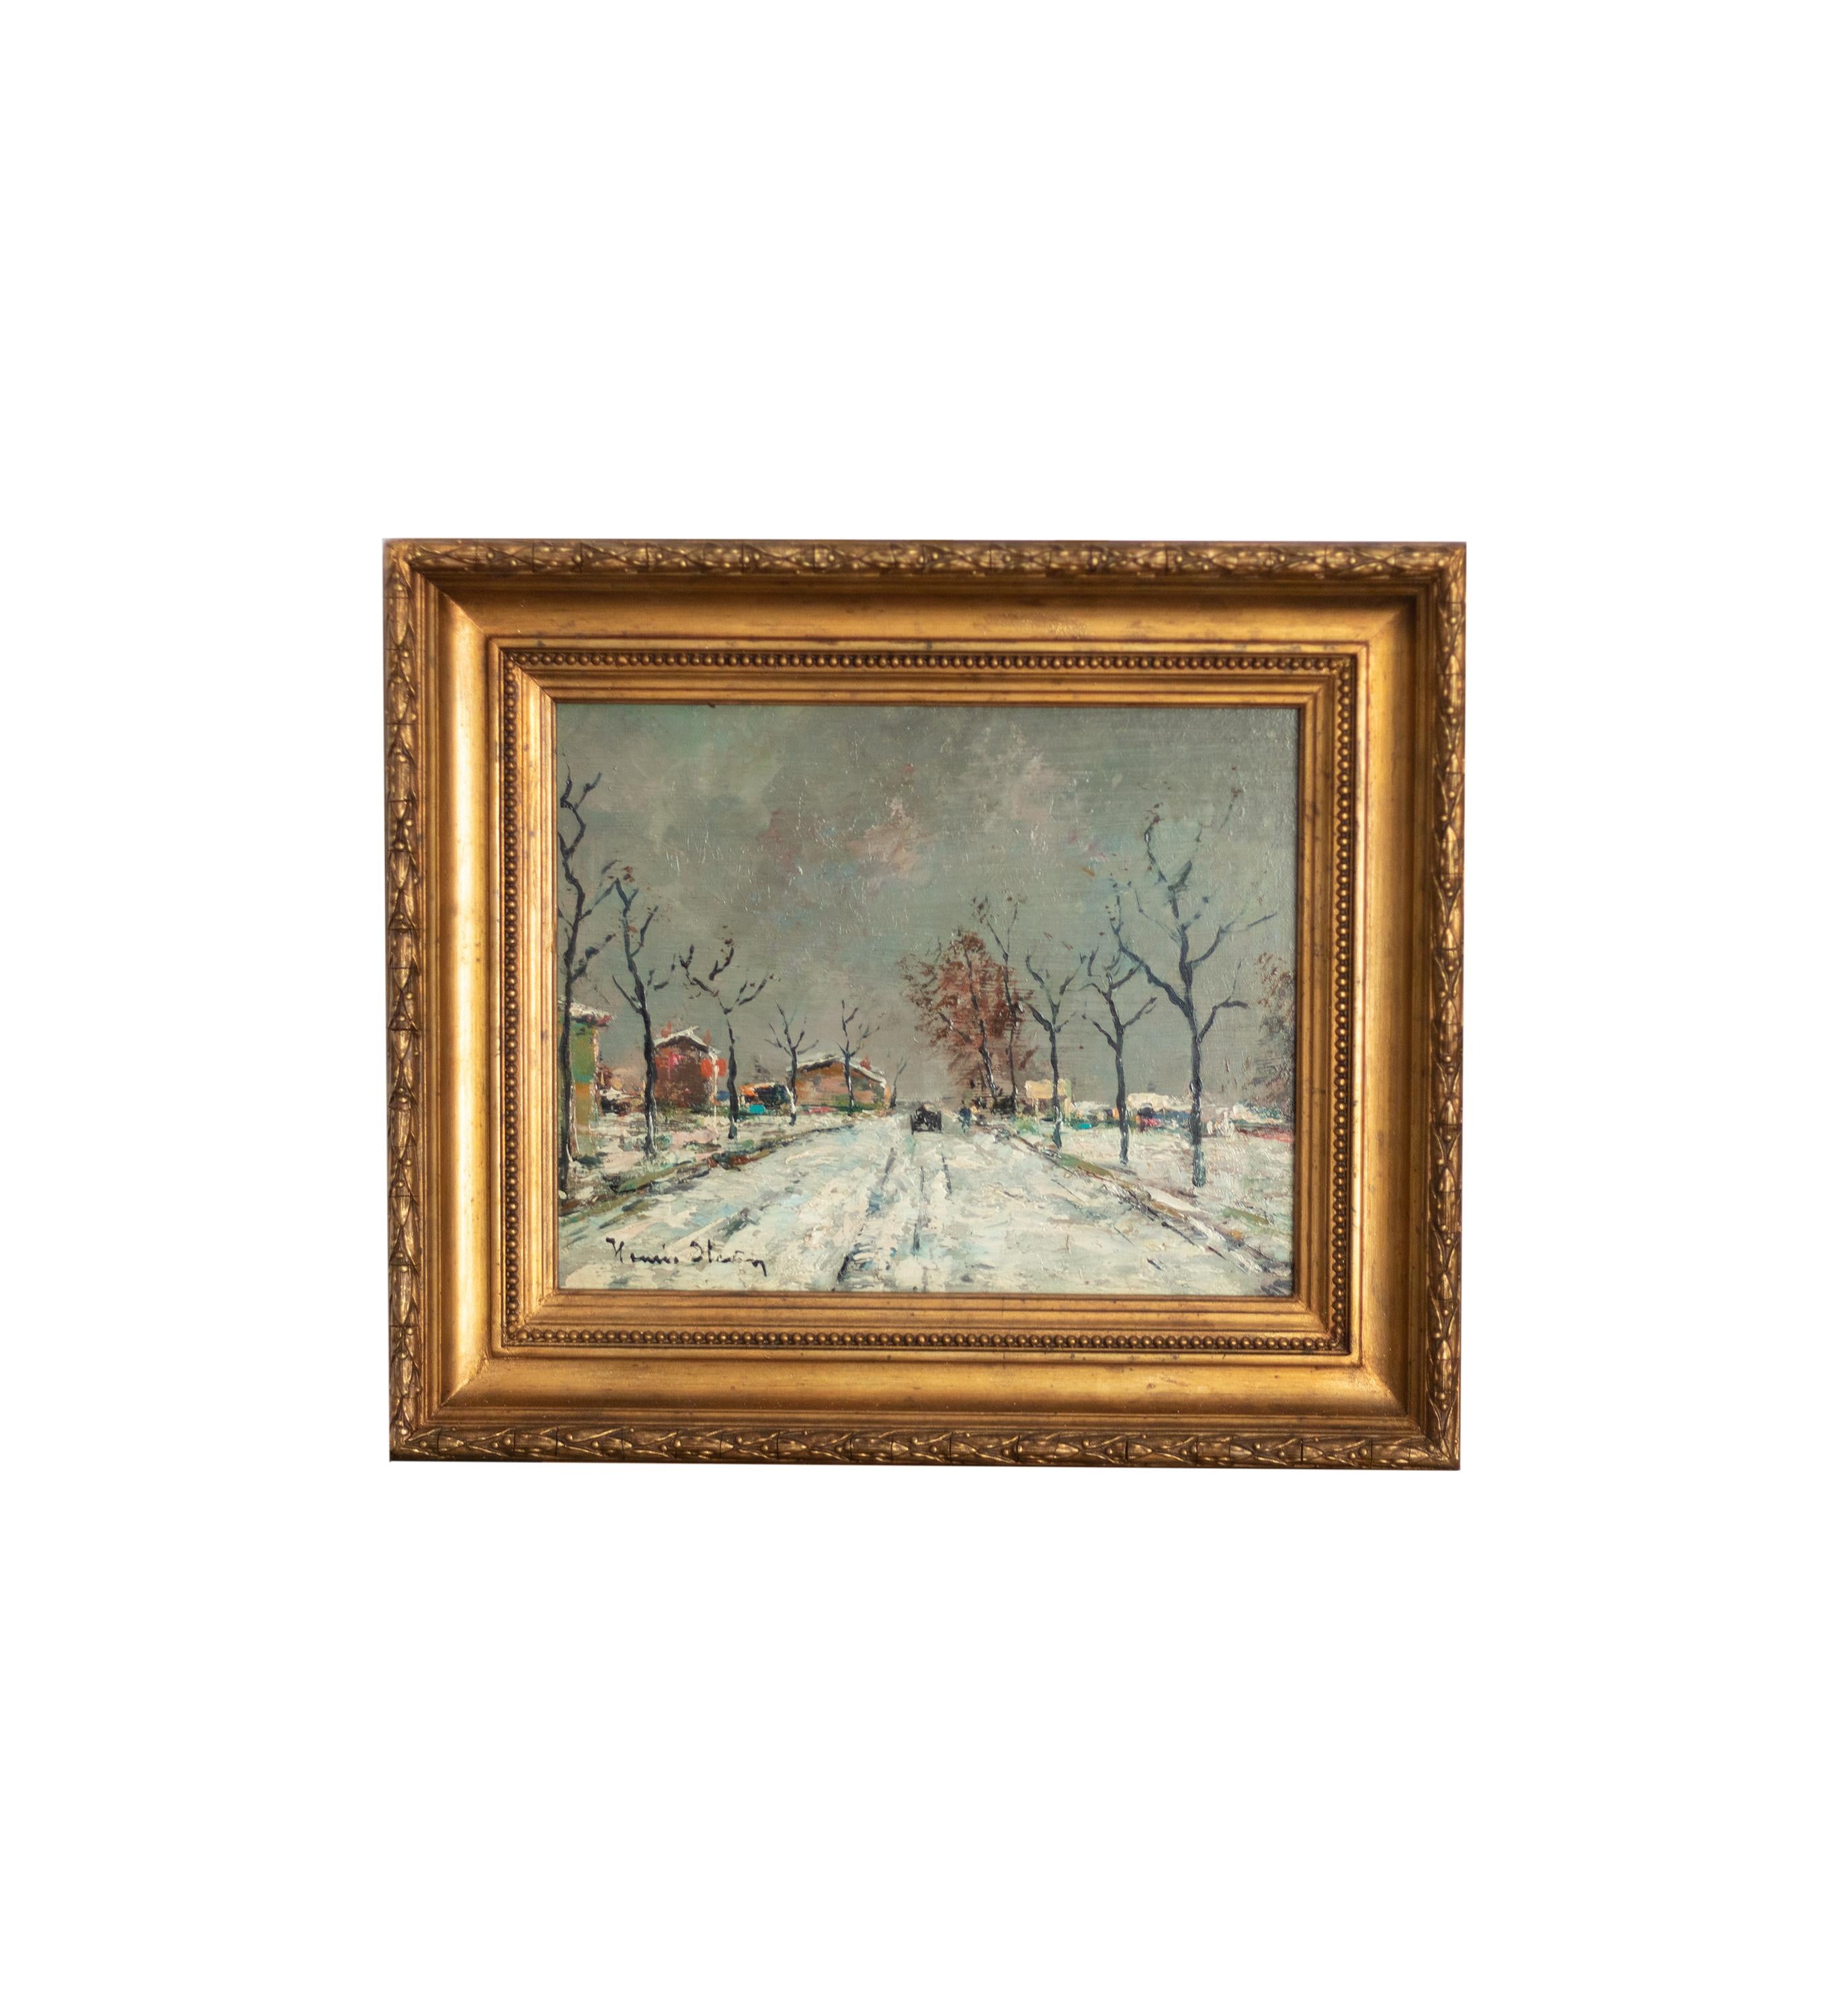 Ein melancholischer postimpressionistischer Hintergrund mit mehreren Figuren auf einer verschneiten Straße von Sir Herbert Edwin Pelham Hughes Stanton (1870-1937)
Hughes-Stanton